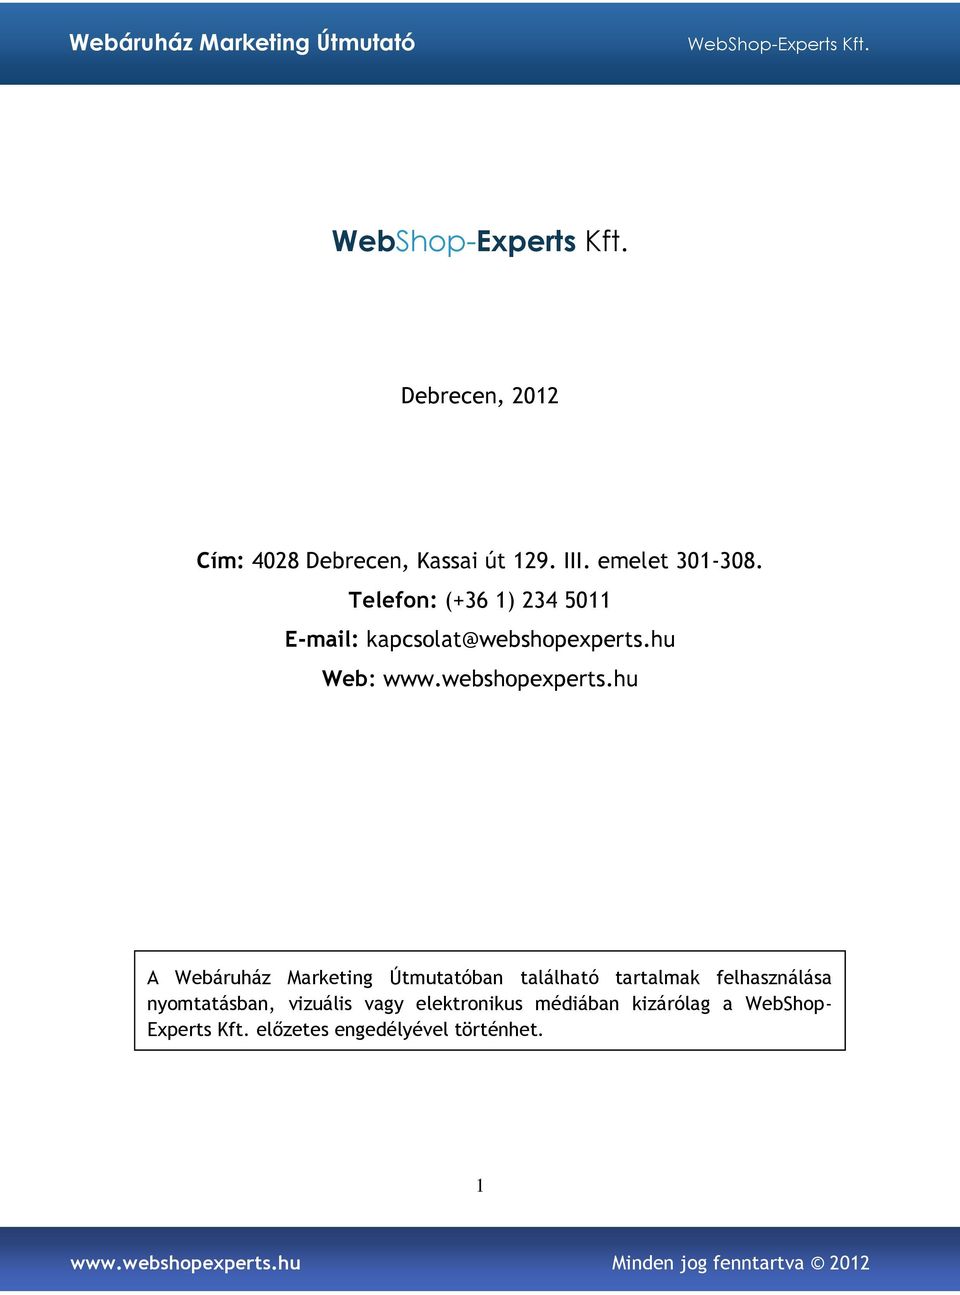 hu Web: www.webshopexperts.